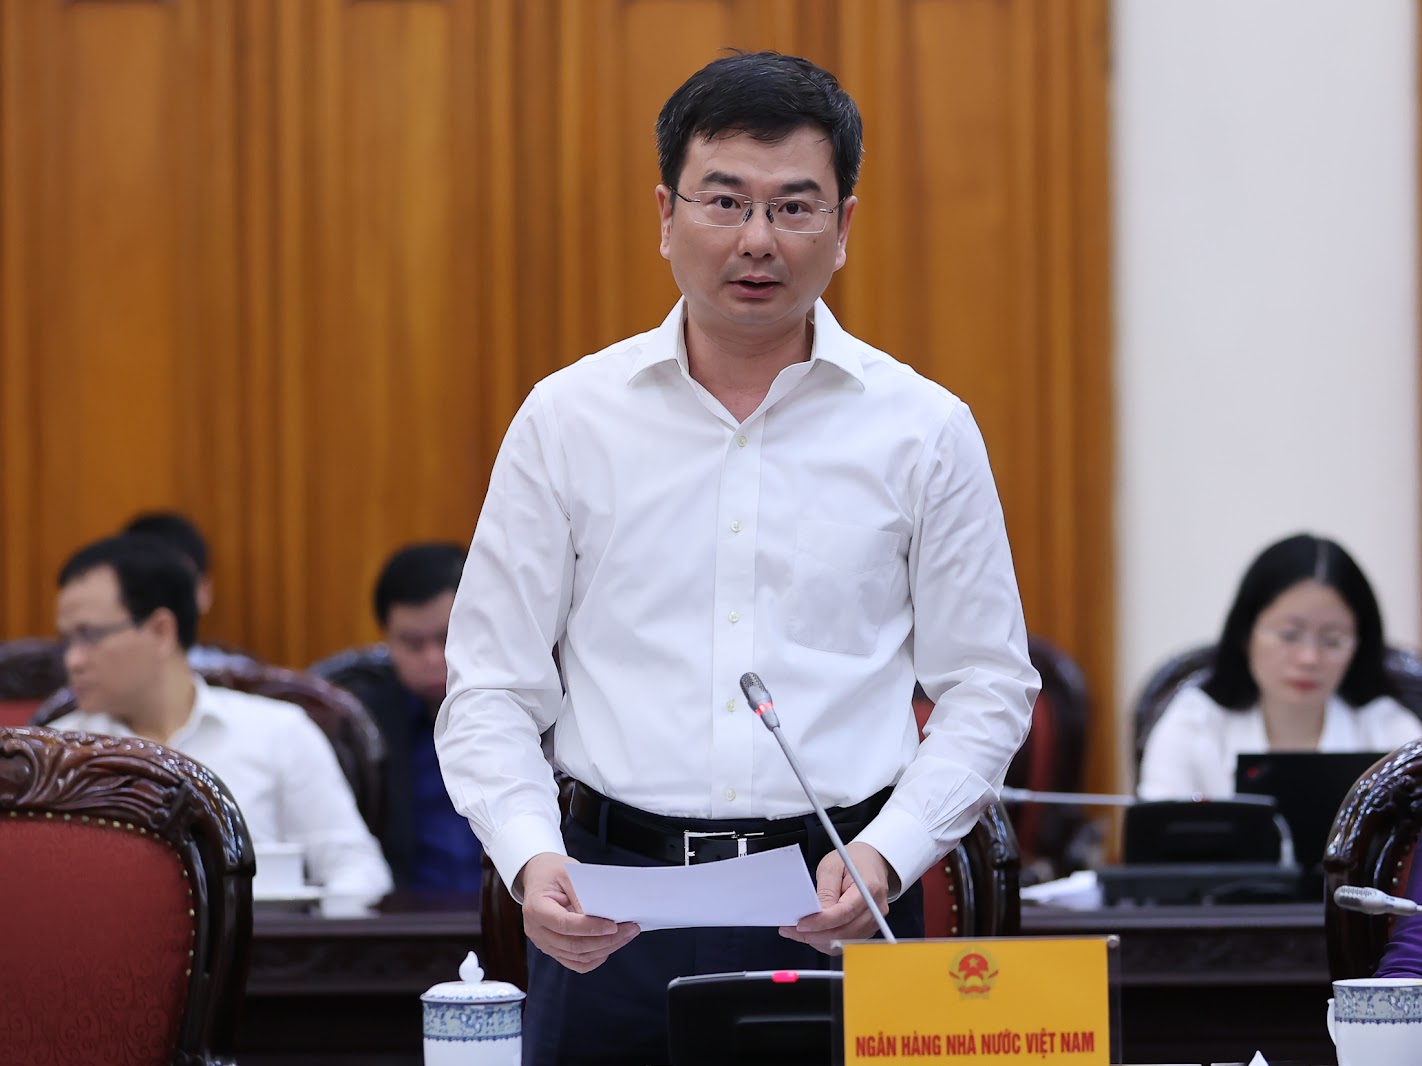 Phó Thống đốc Ngân hàng Nhà nước Việt Nam Phạm Thanh Hà phát biểu tại phiên họp.  (Ảnh: VGP/Nhật Bắc)